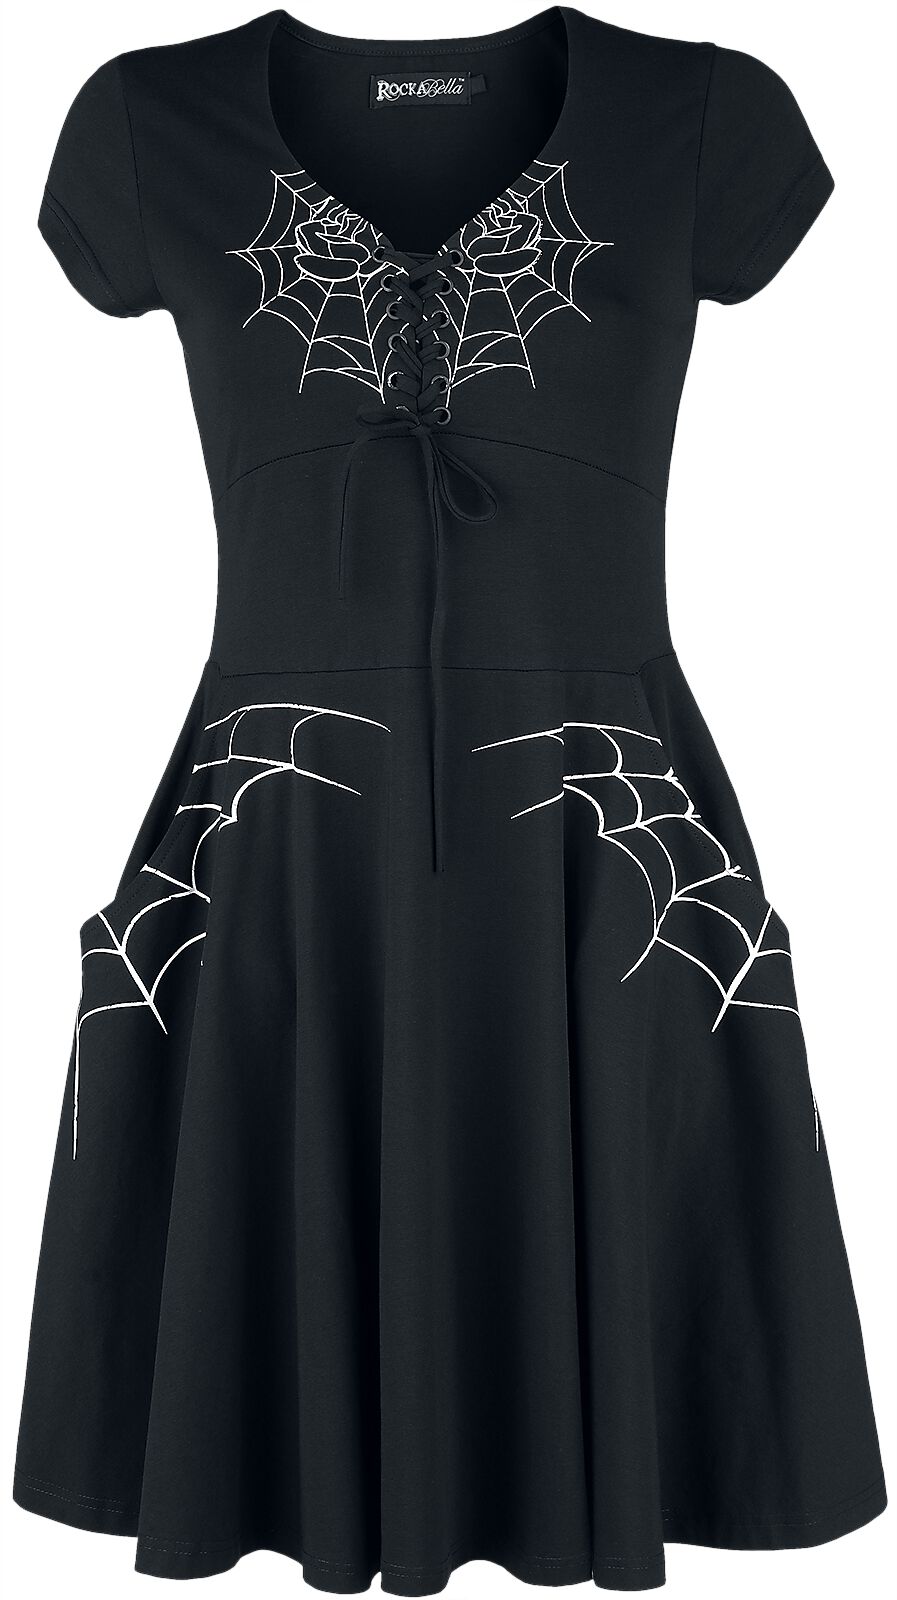 Rockabella - Gothic Kurzes Kleid - Black Widow Dress - S bis 4XL - für Damen - Größe XXL - schwarz/weiß von Rockabella